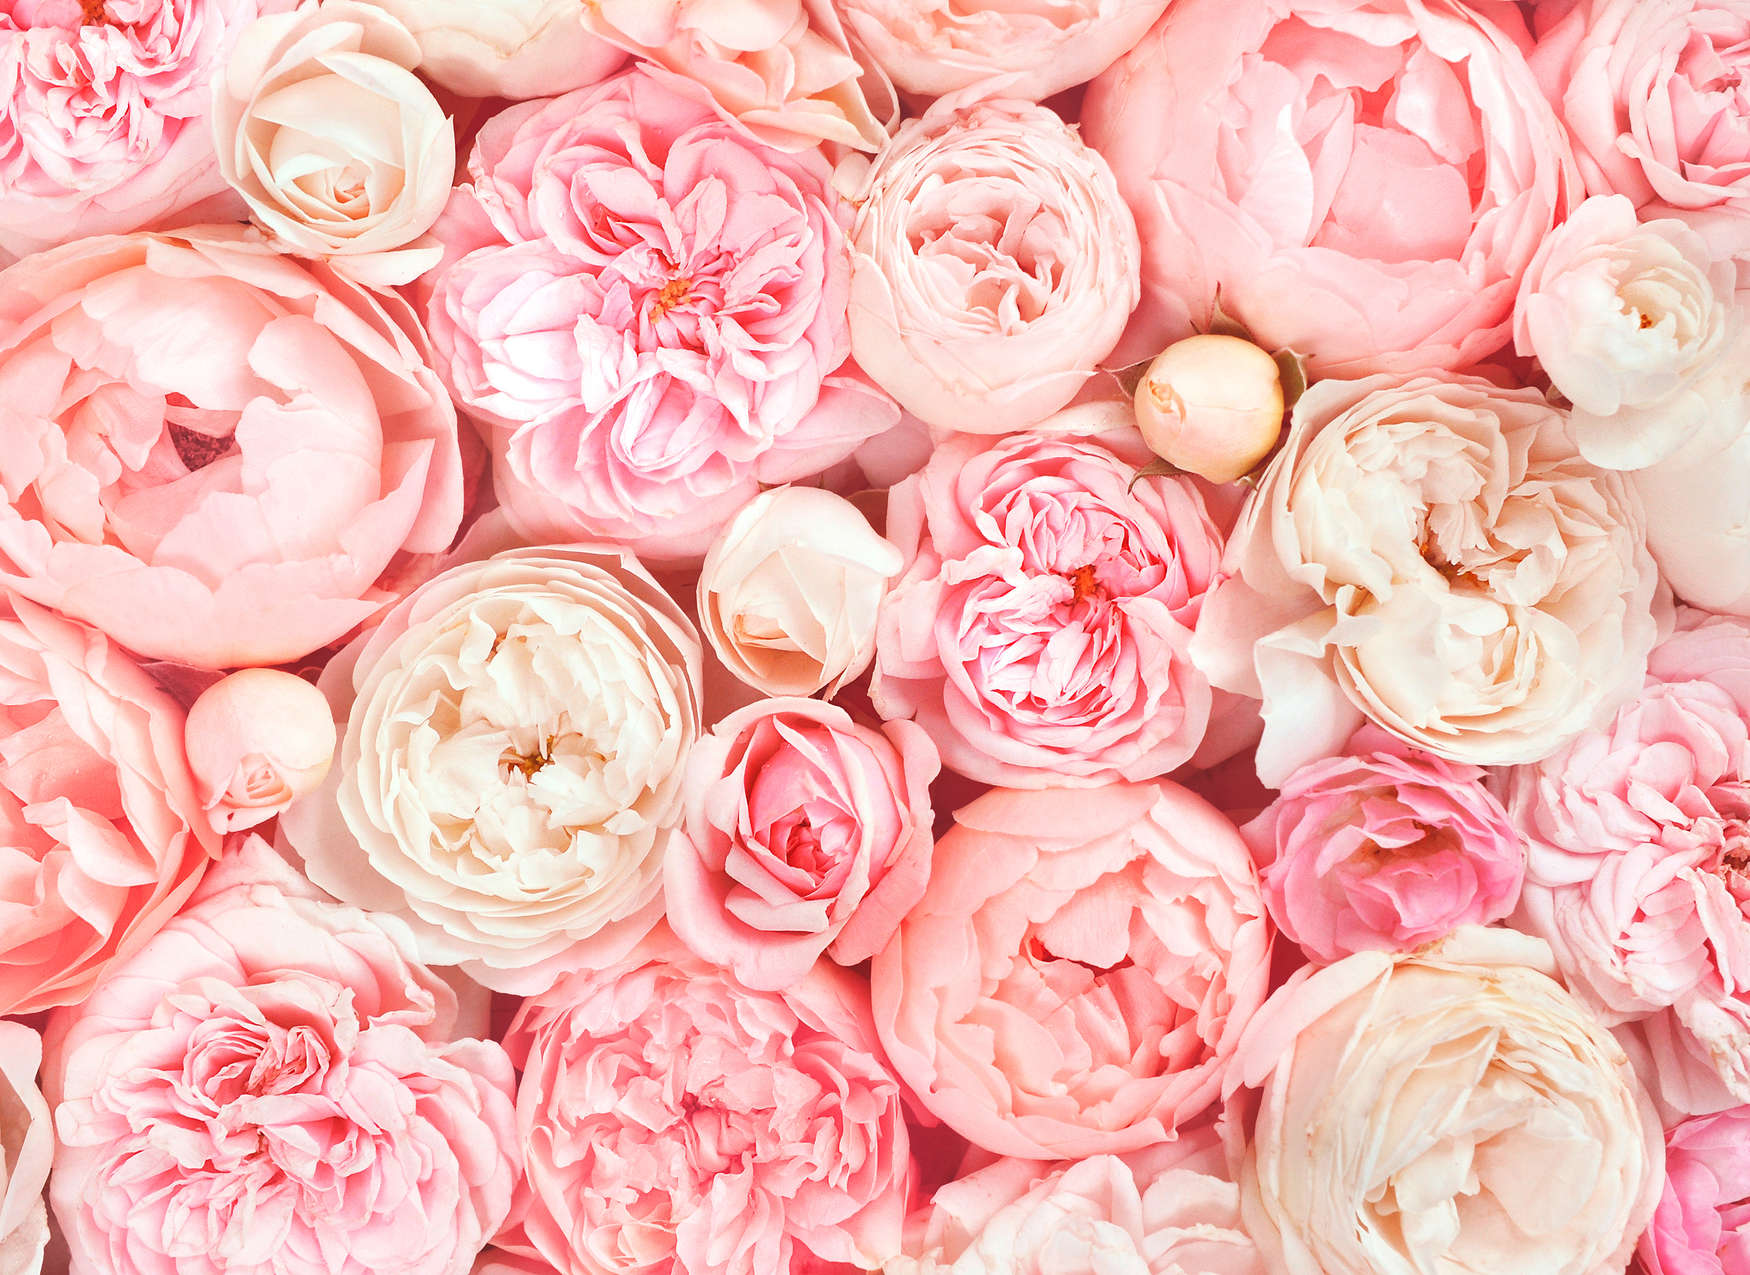             Fotomurali con motivo di rose - rosa, bianco, crema
        